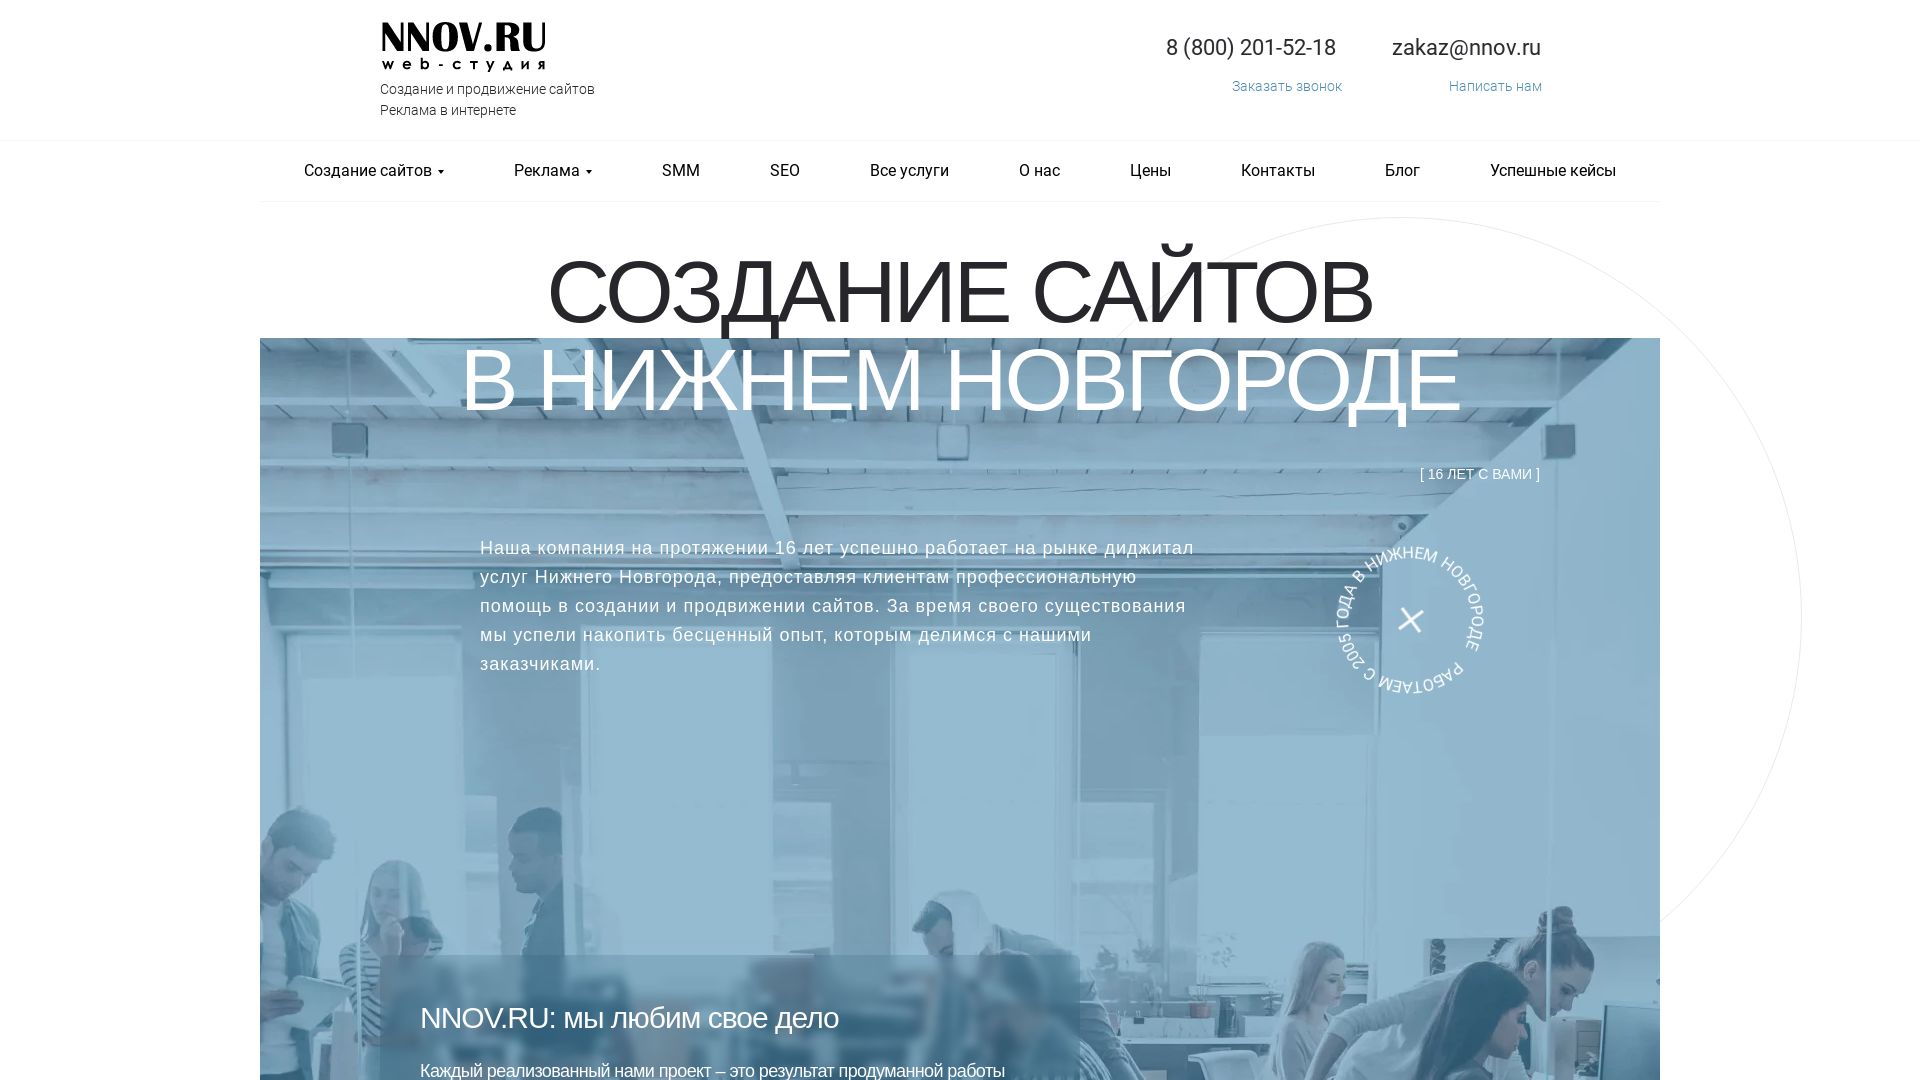 Website status nnov.ru is   ONLINE